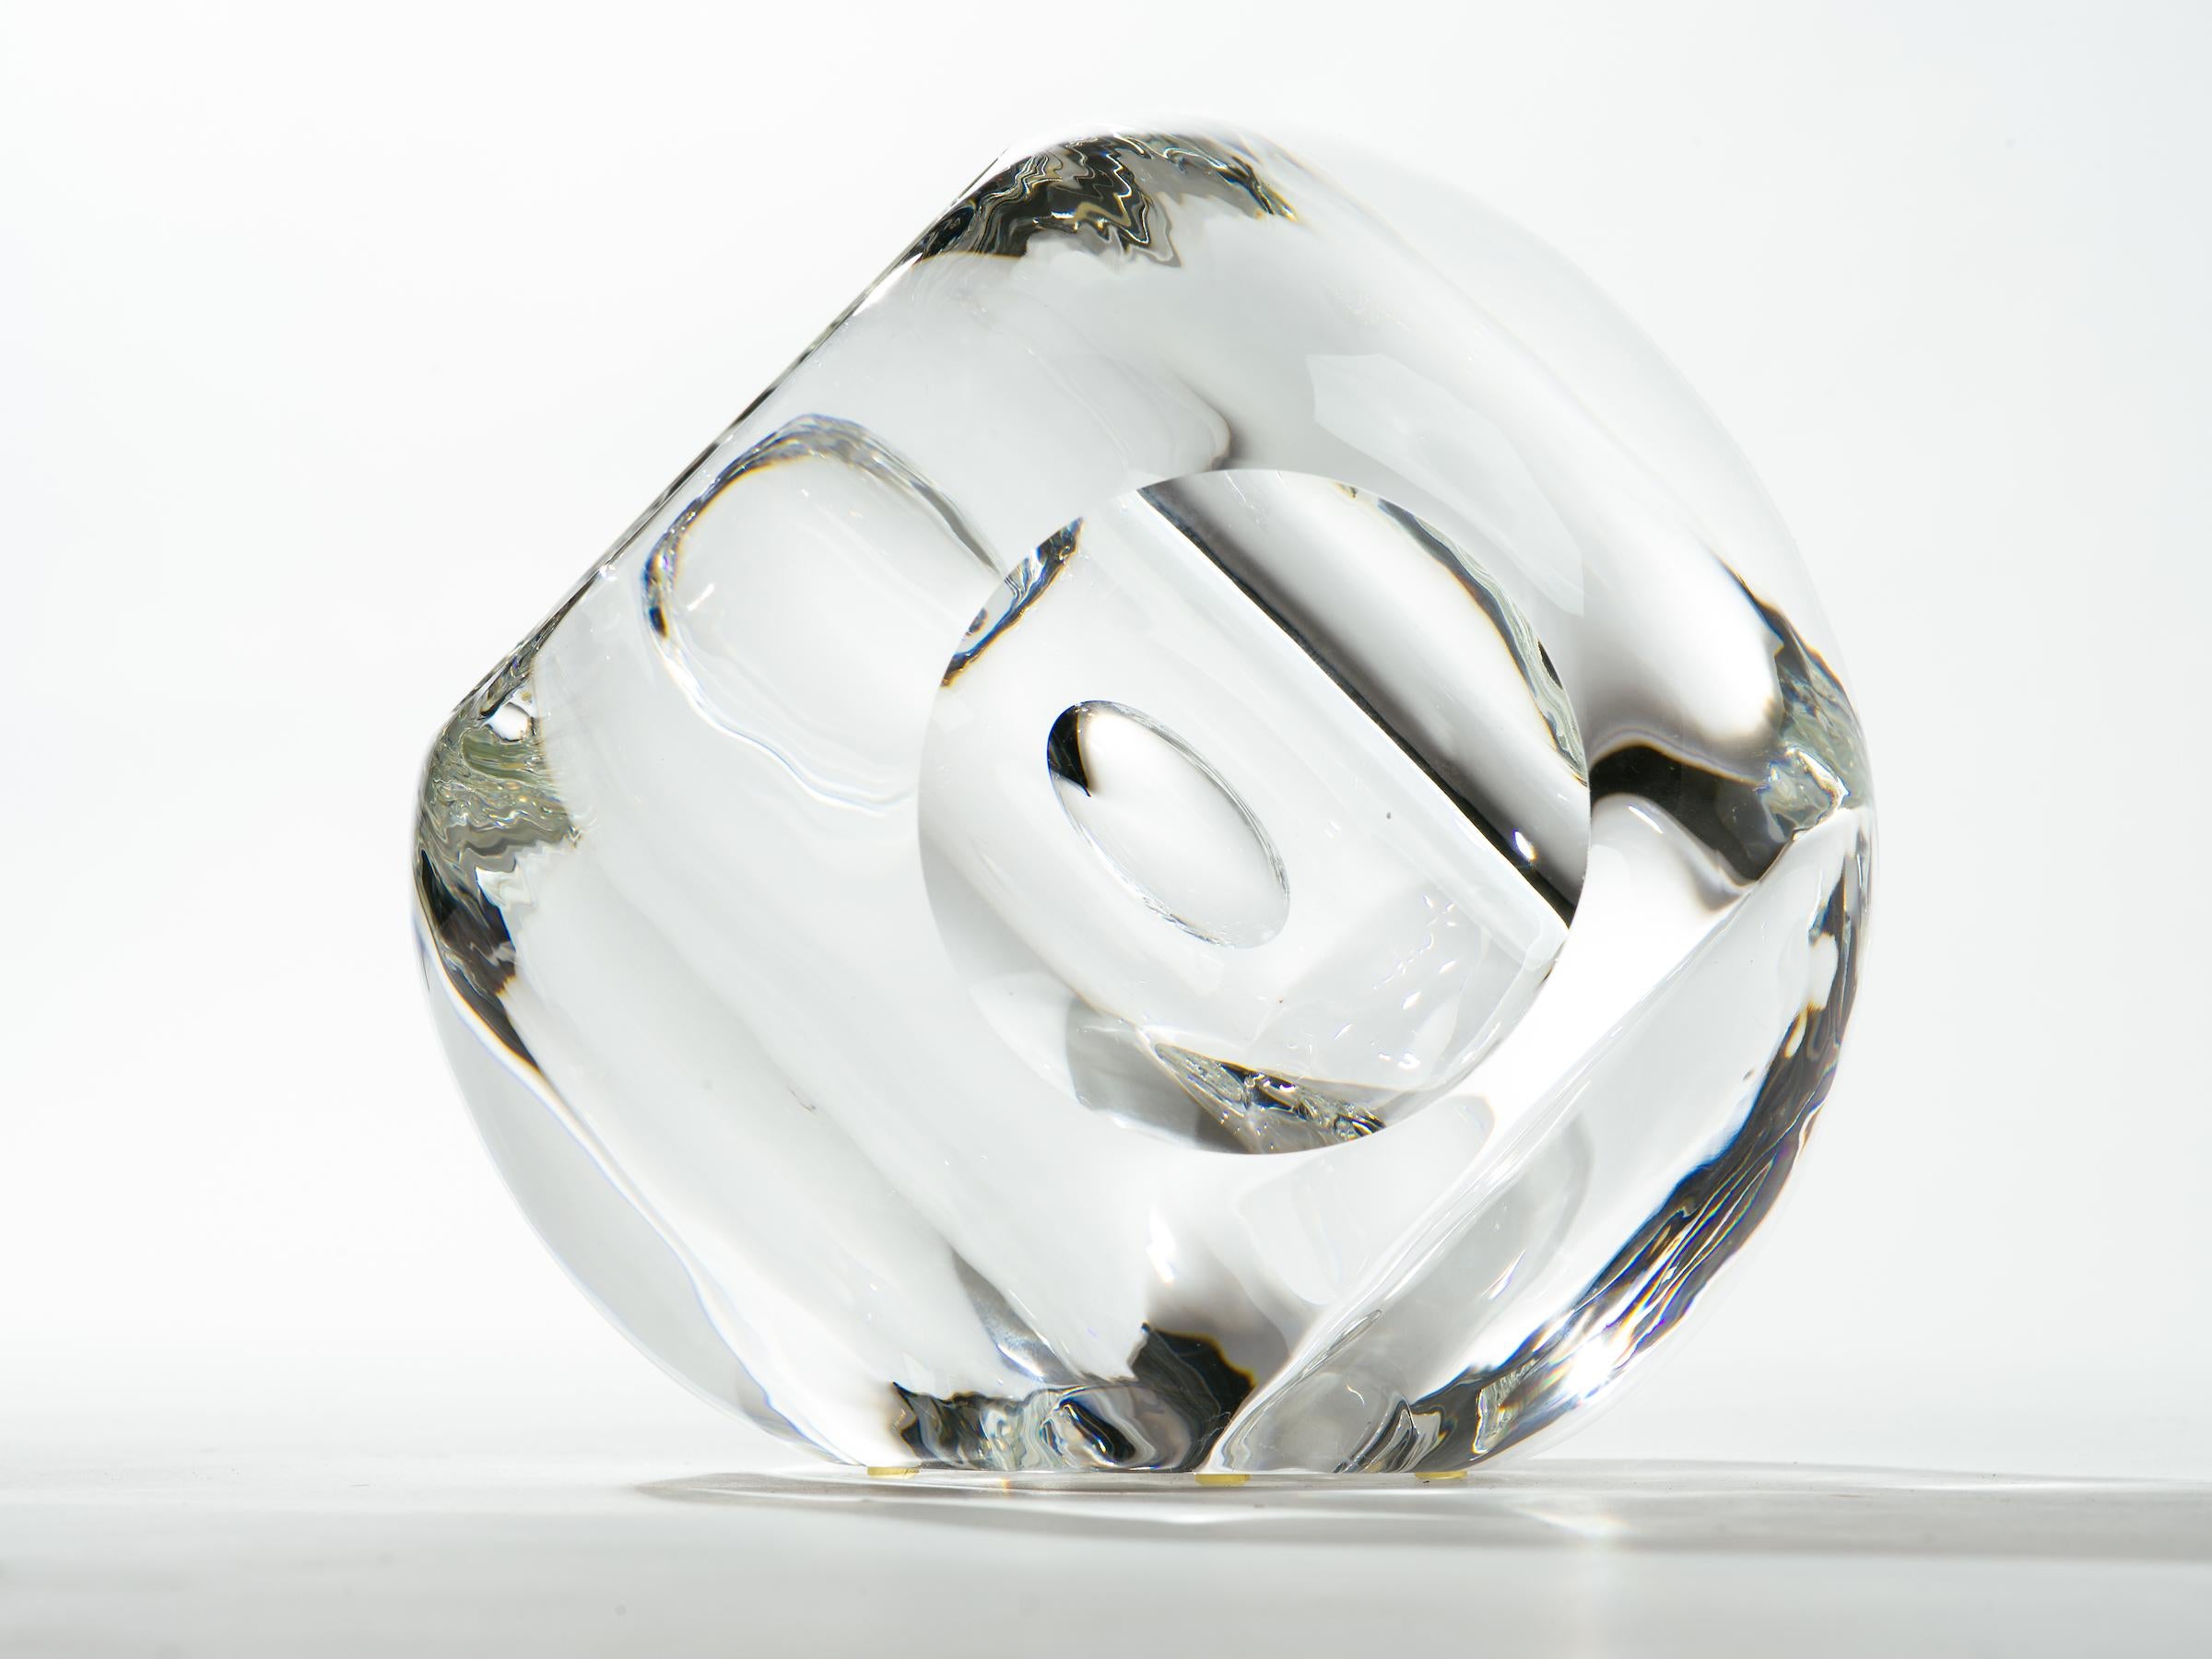 American Op Art Engraved Convex Glass Sphere Sculpture Vase